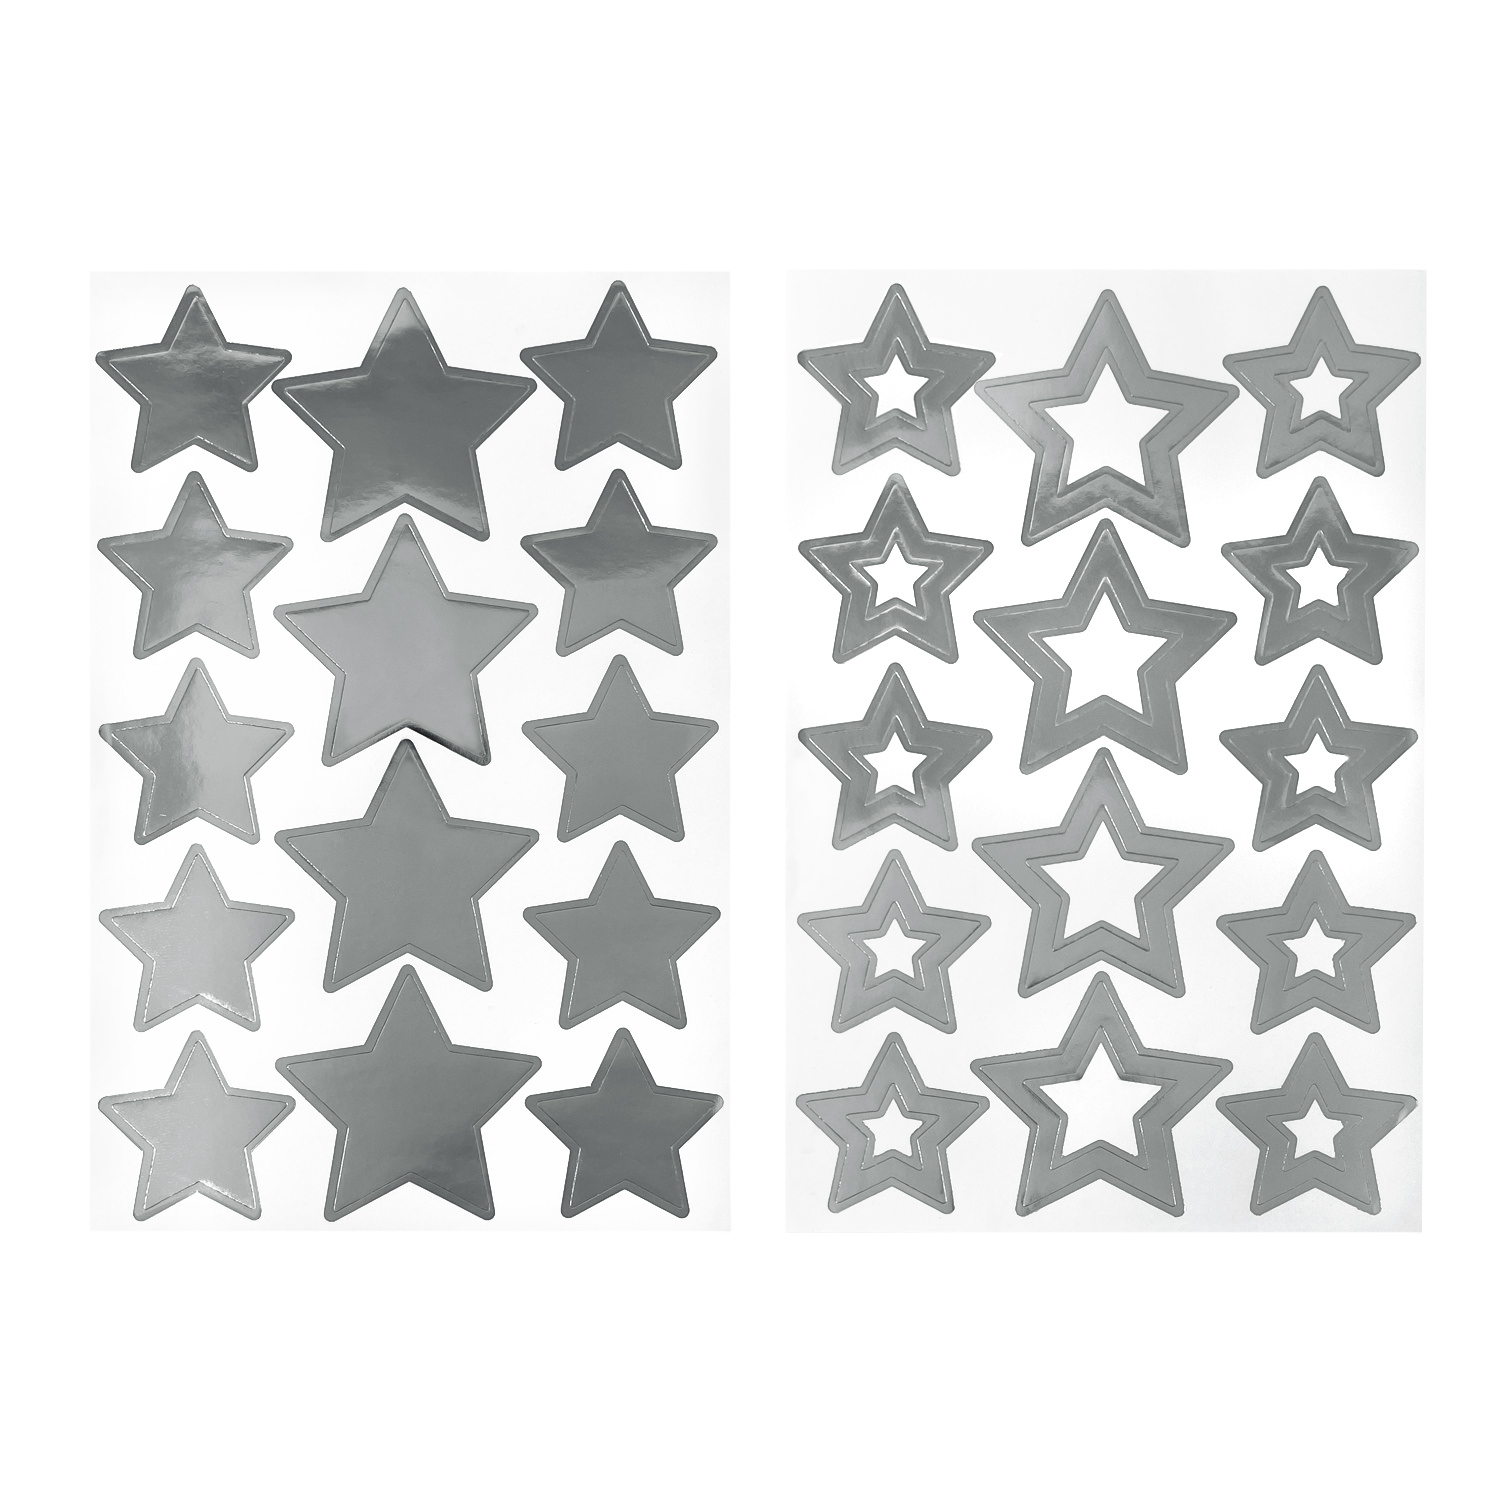 28 Sterne Sticker Stern Aufkleber für Weihnachten Weihnachtsdeko  Geschenkdeko Basteln Glänzend - silber